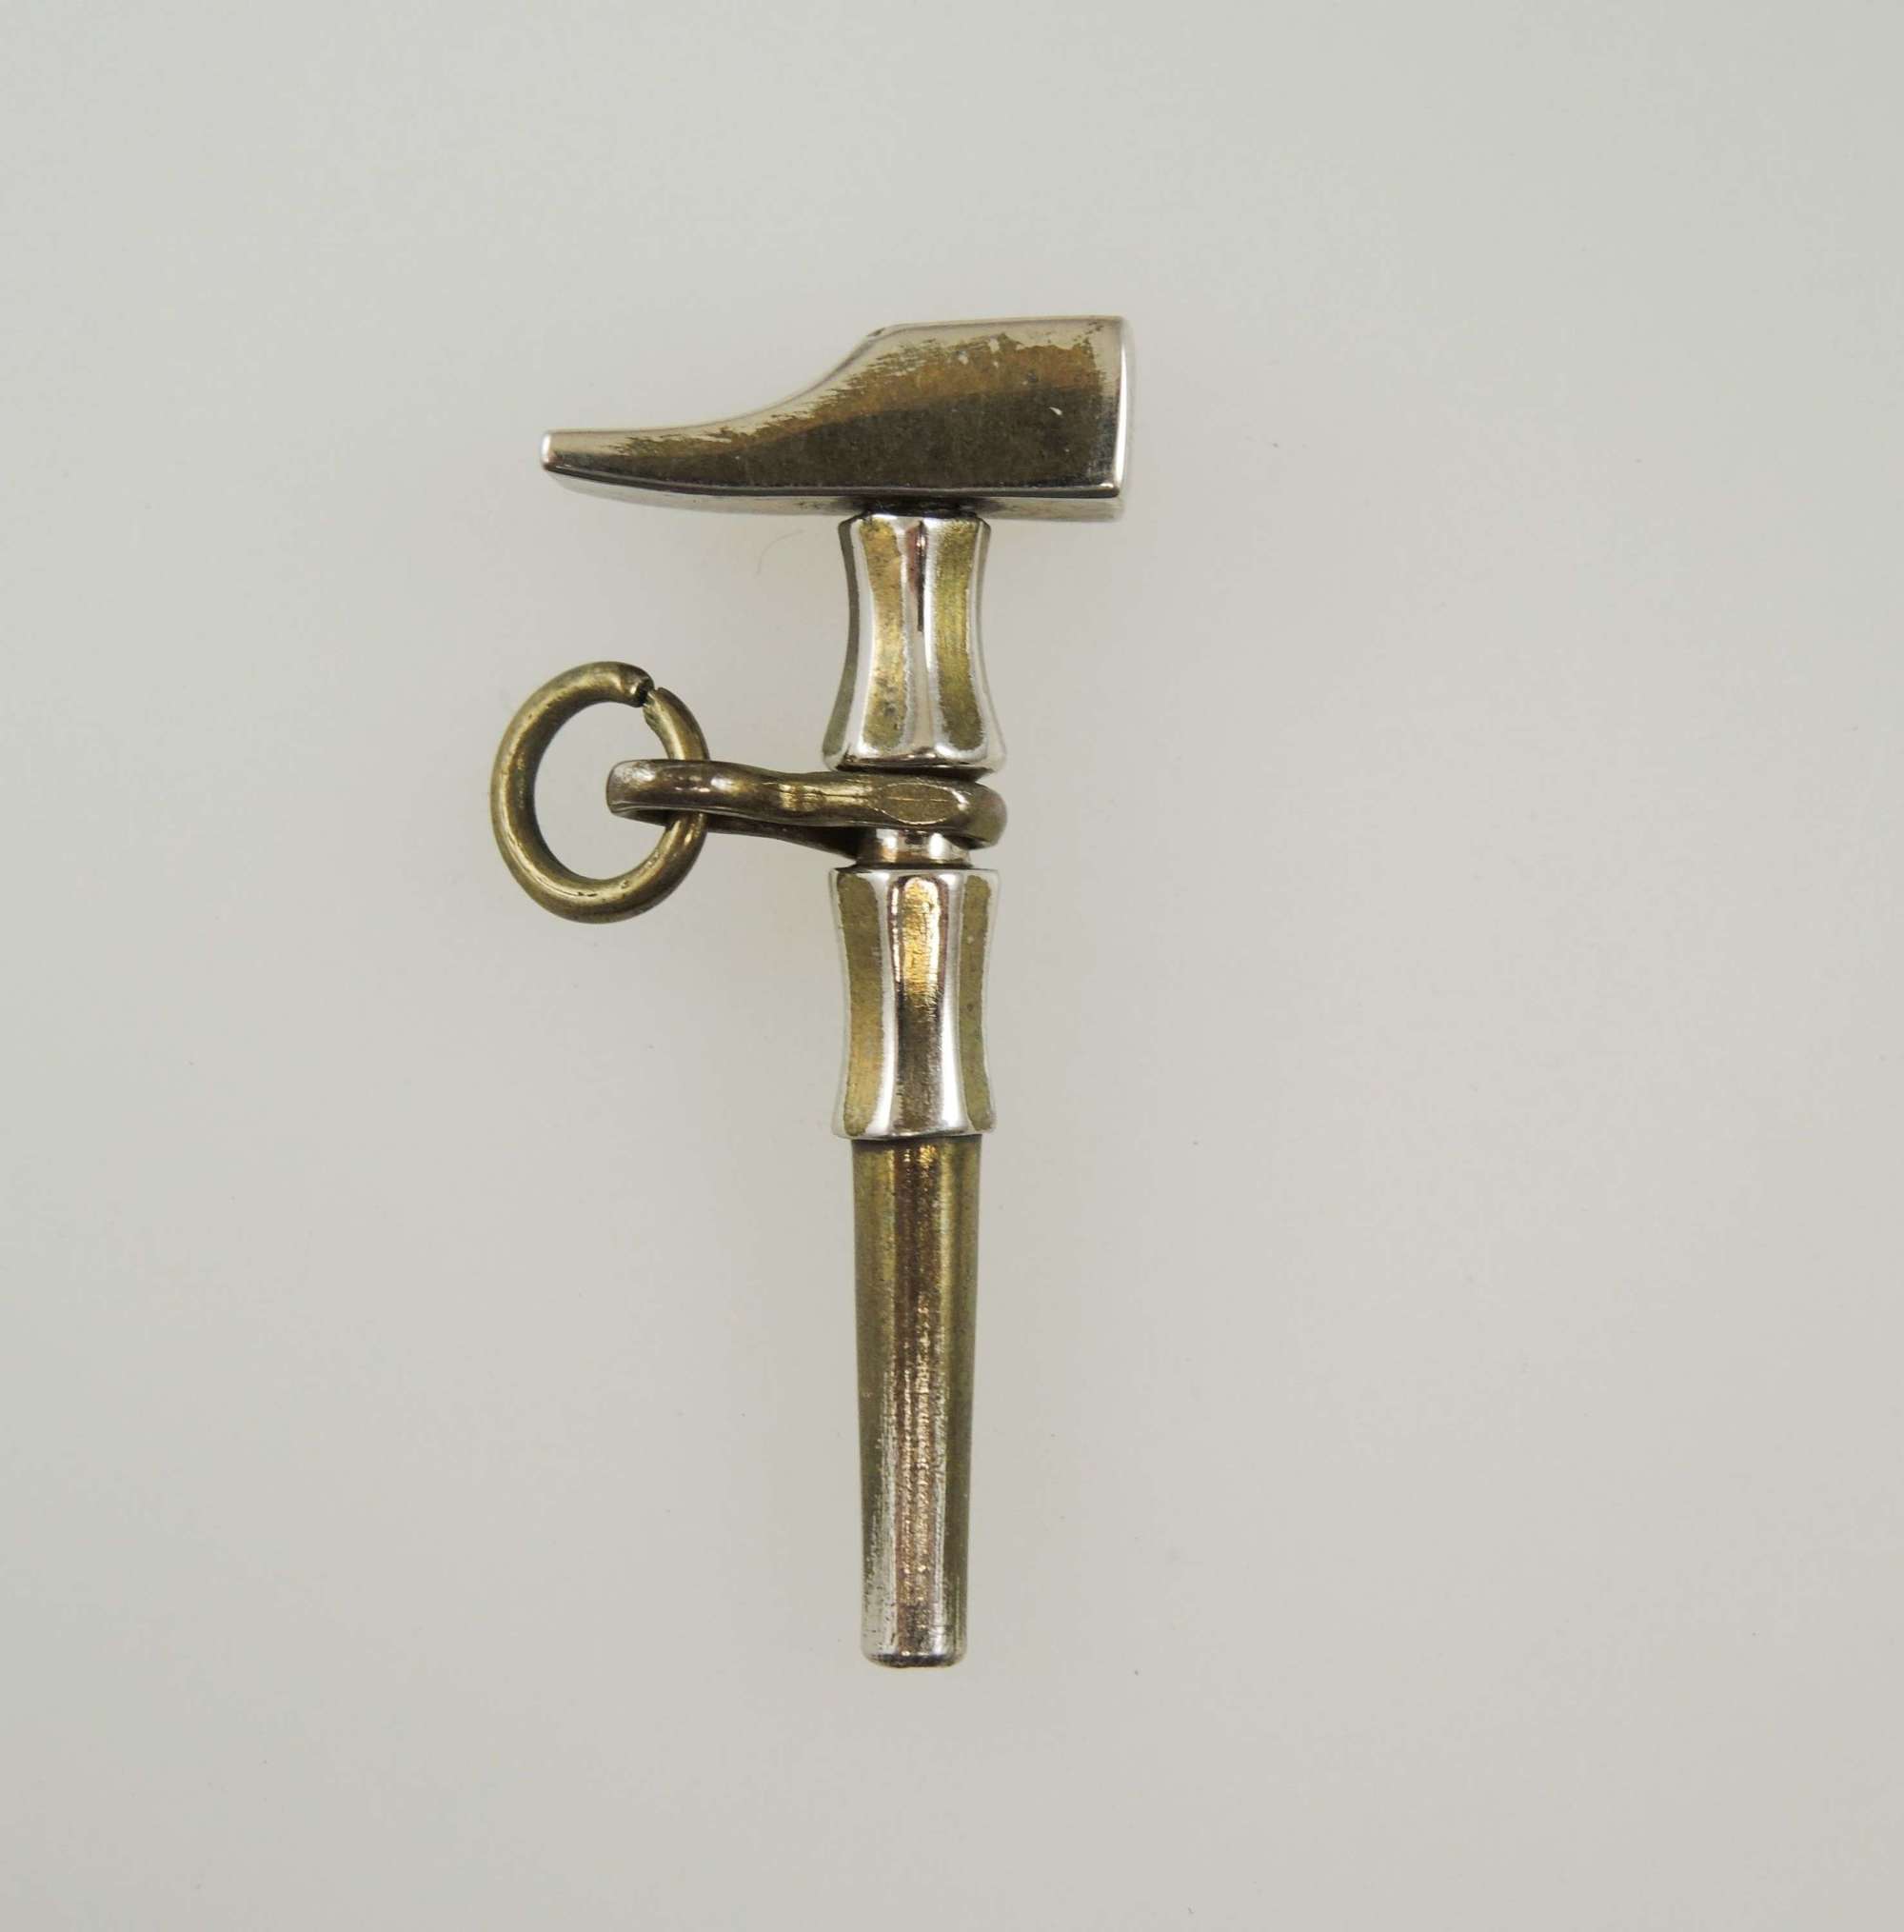 Unusual HAMMER shaped pocket watch key c1880